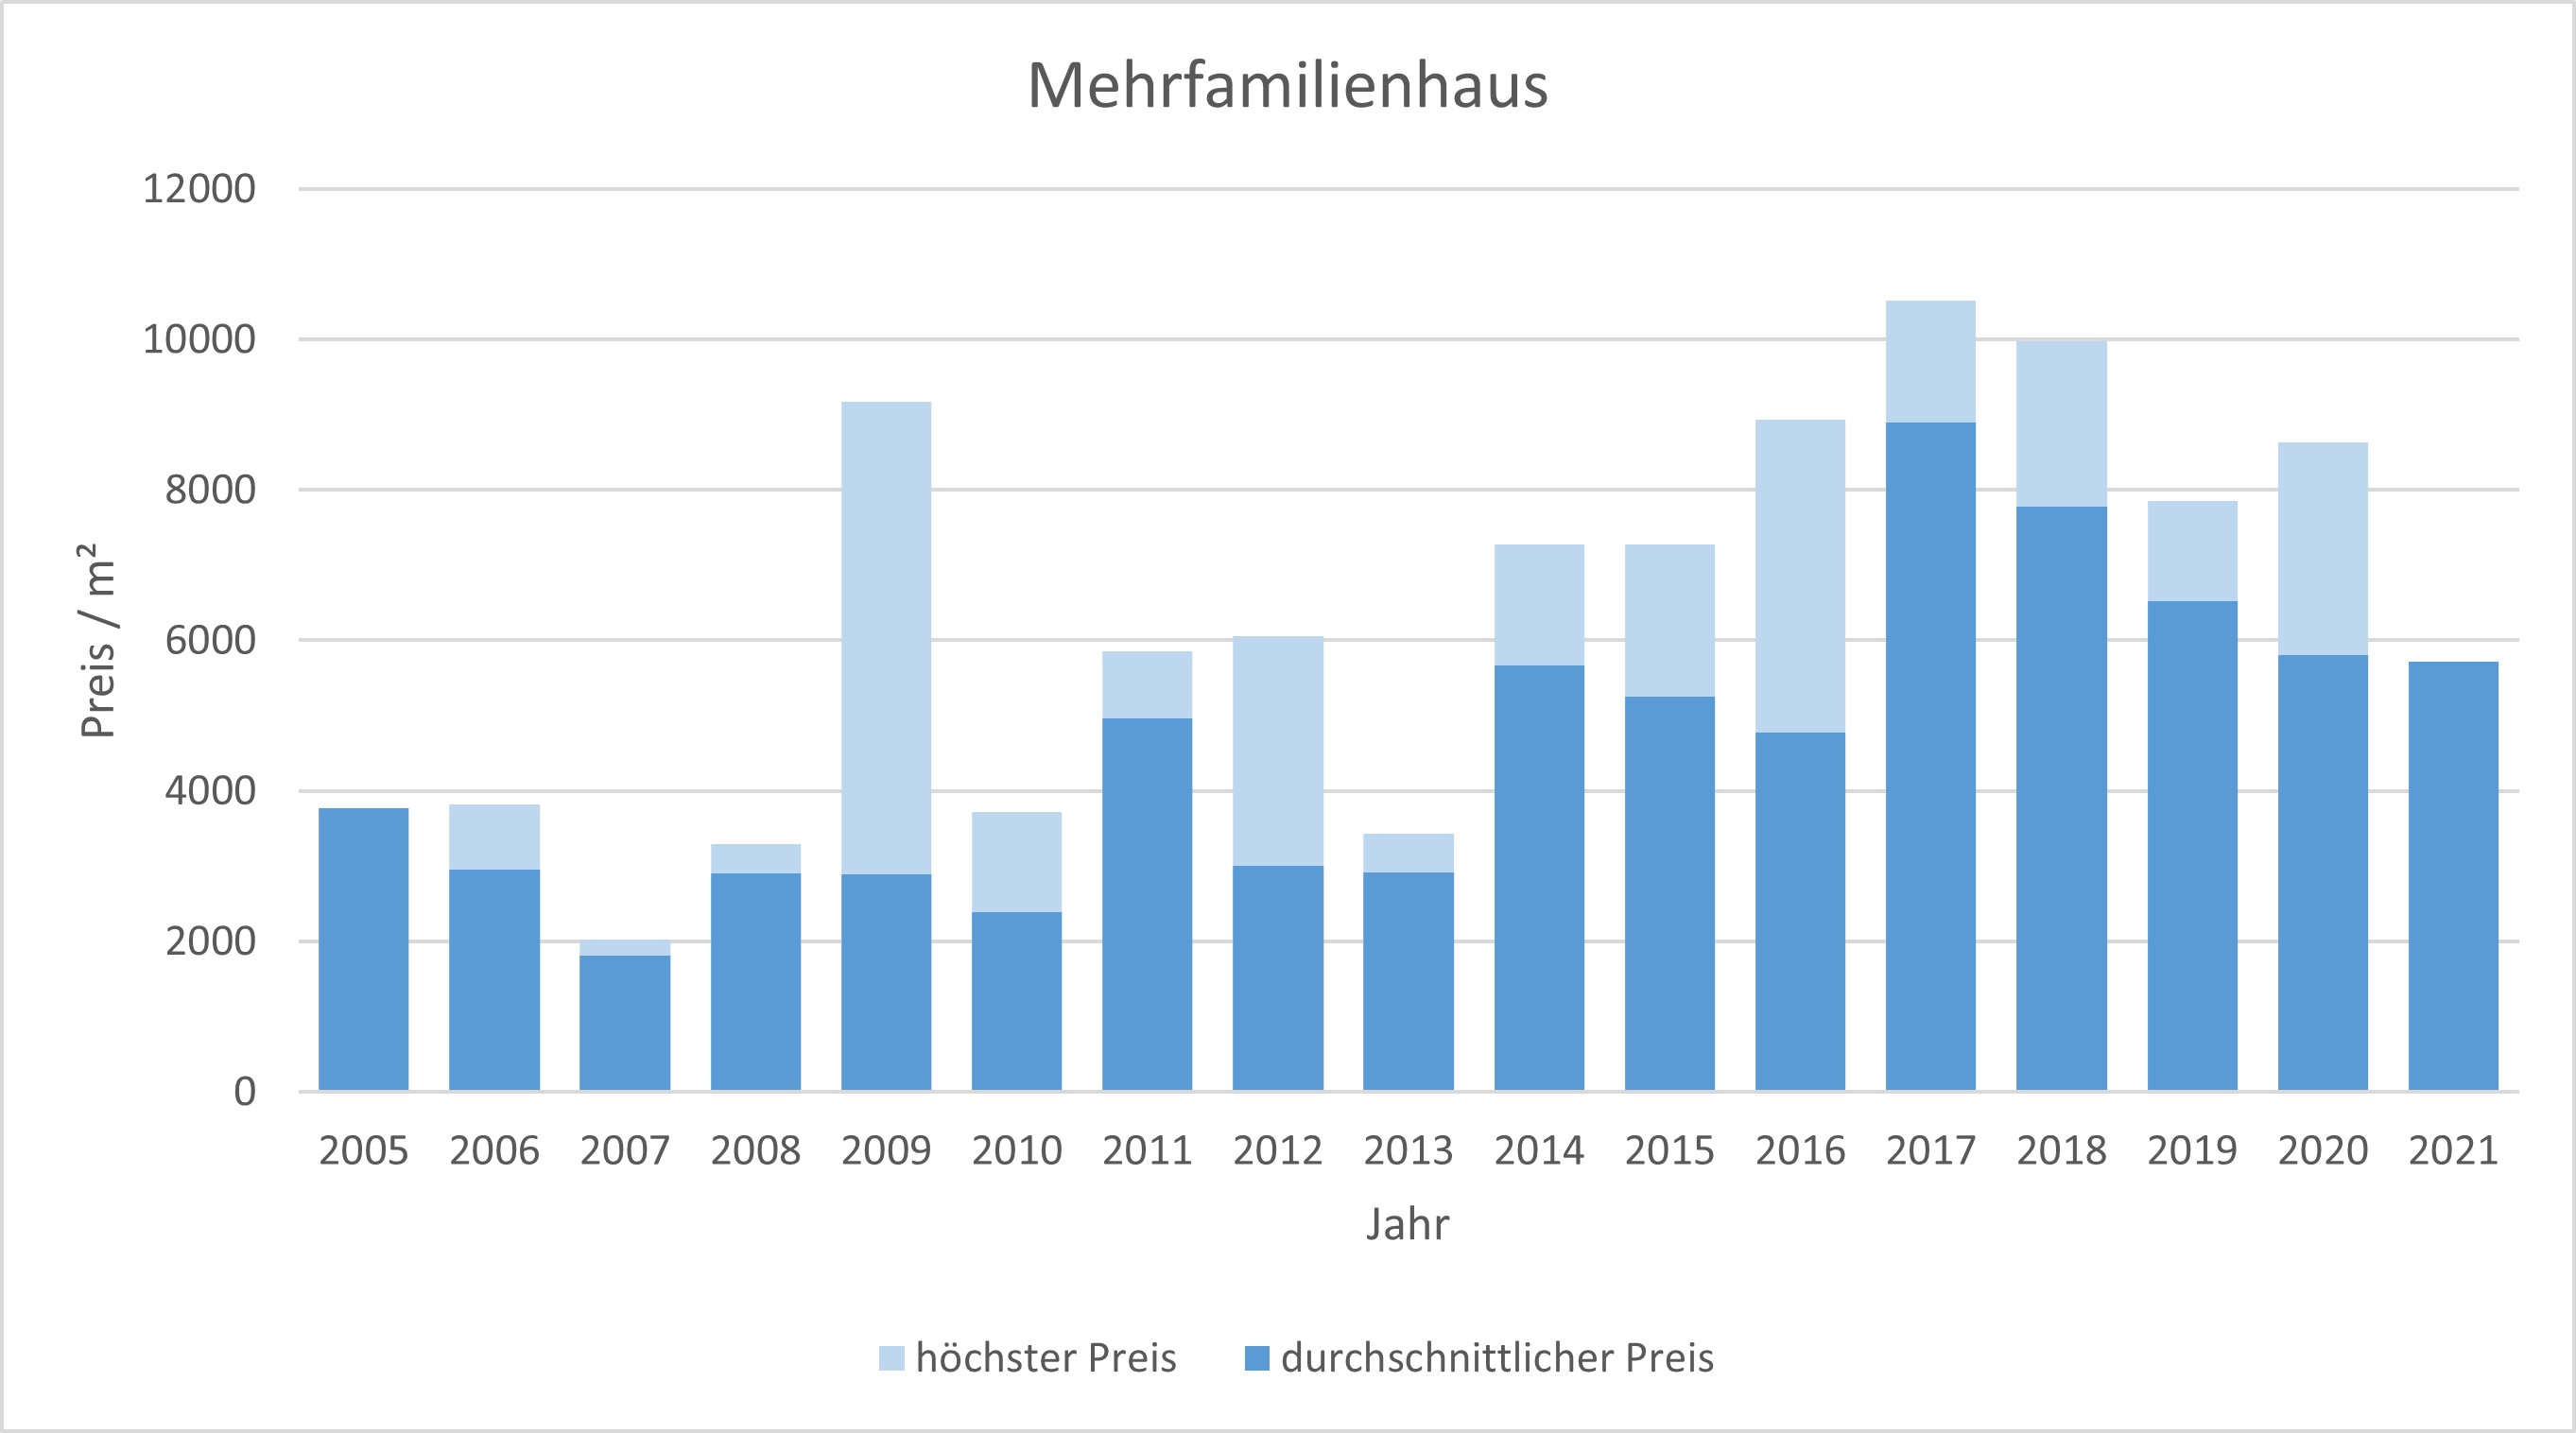 Rottach-Egern Mehrfamilienhaus kaufen verkaufen Preis Bewertung Makler  2019 2020 2021 www.happy-immo.de